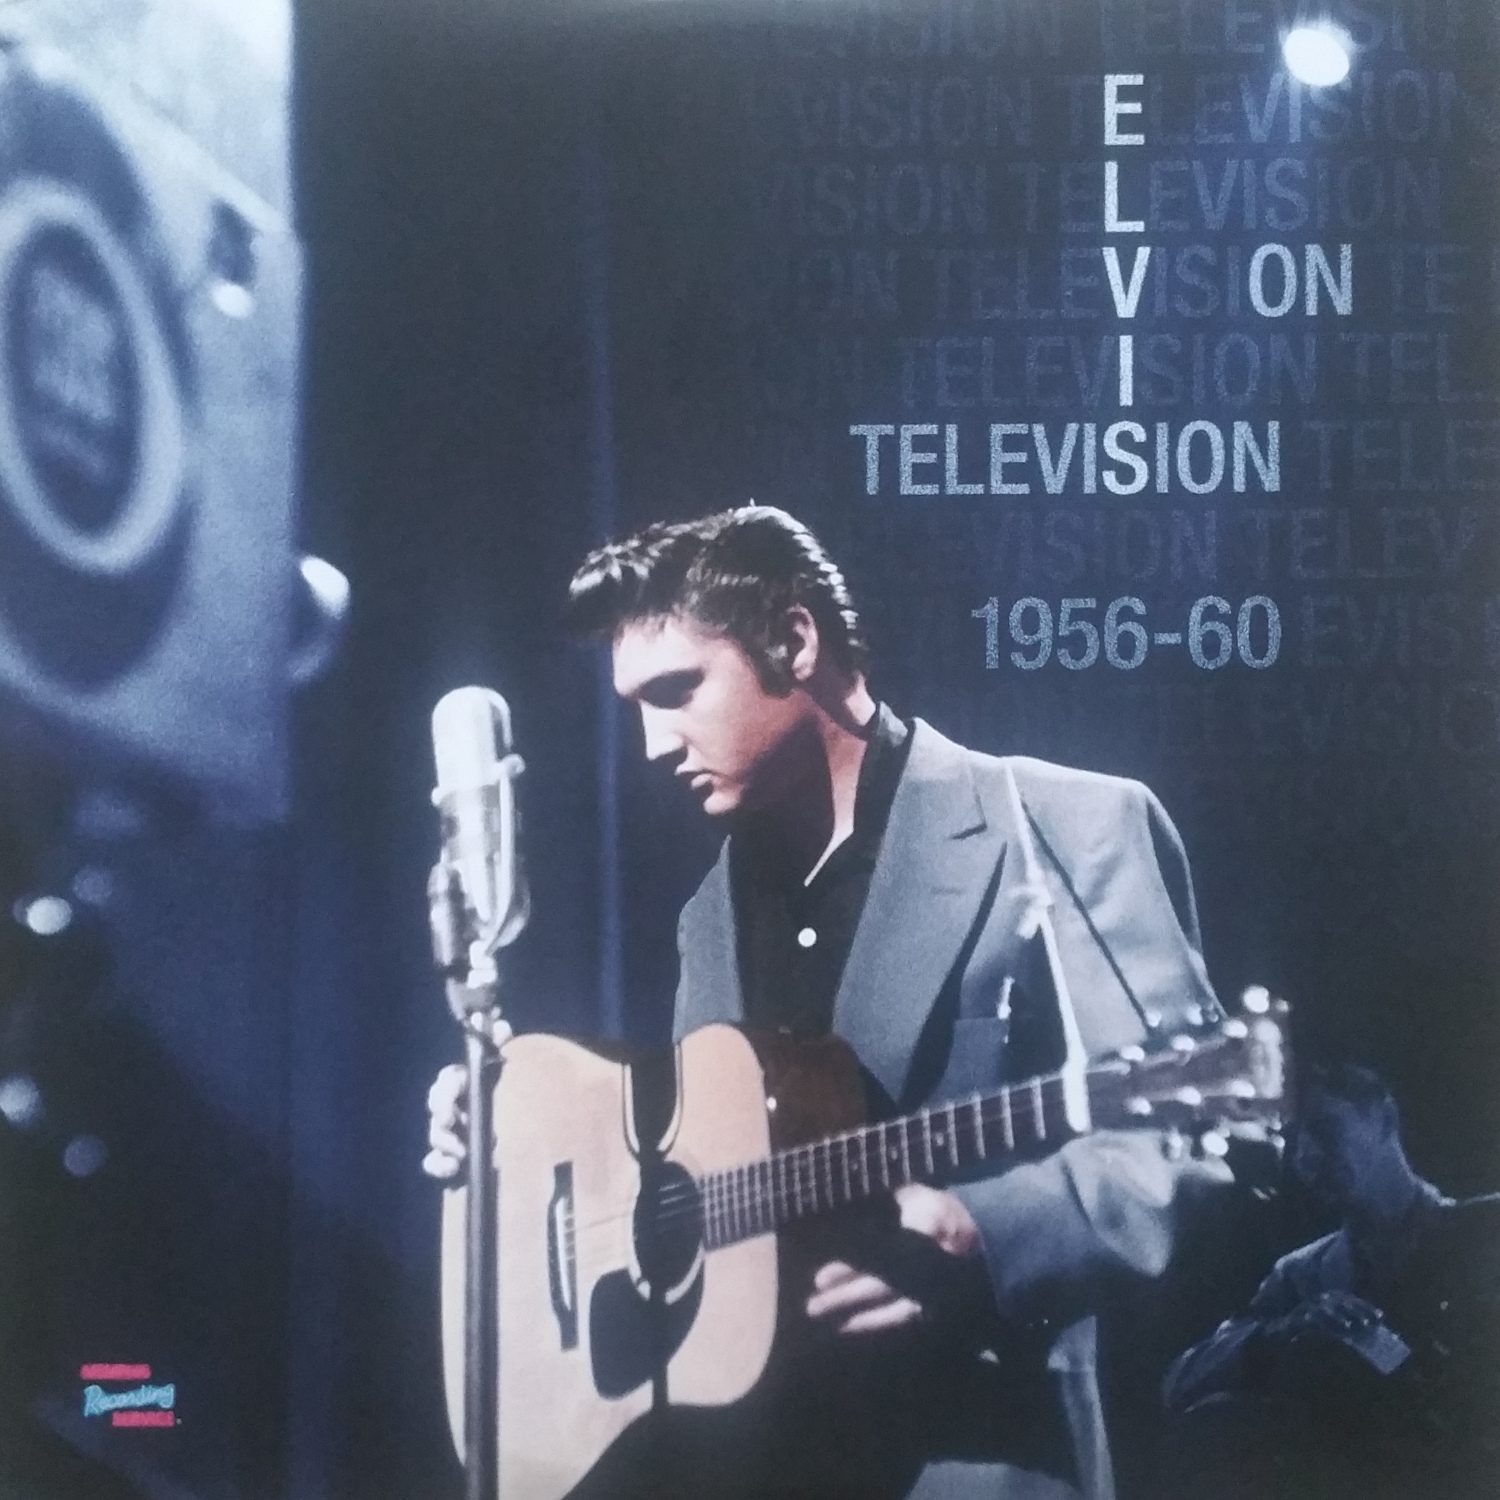 ELVIS ON TELEVISION 1956 - 60 Elvisontv1tfjnb